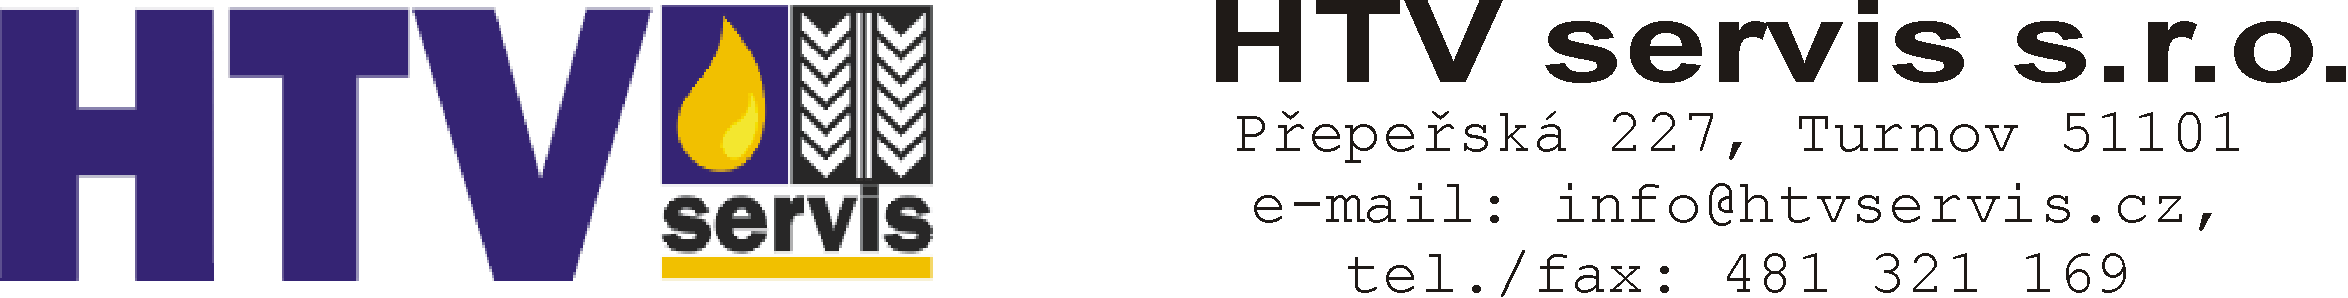 Logo HTV servis s.r.o.